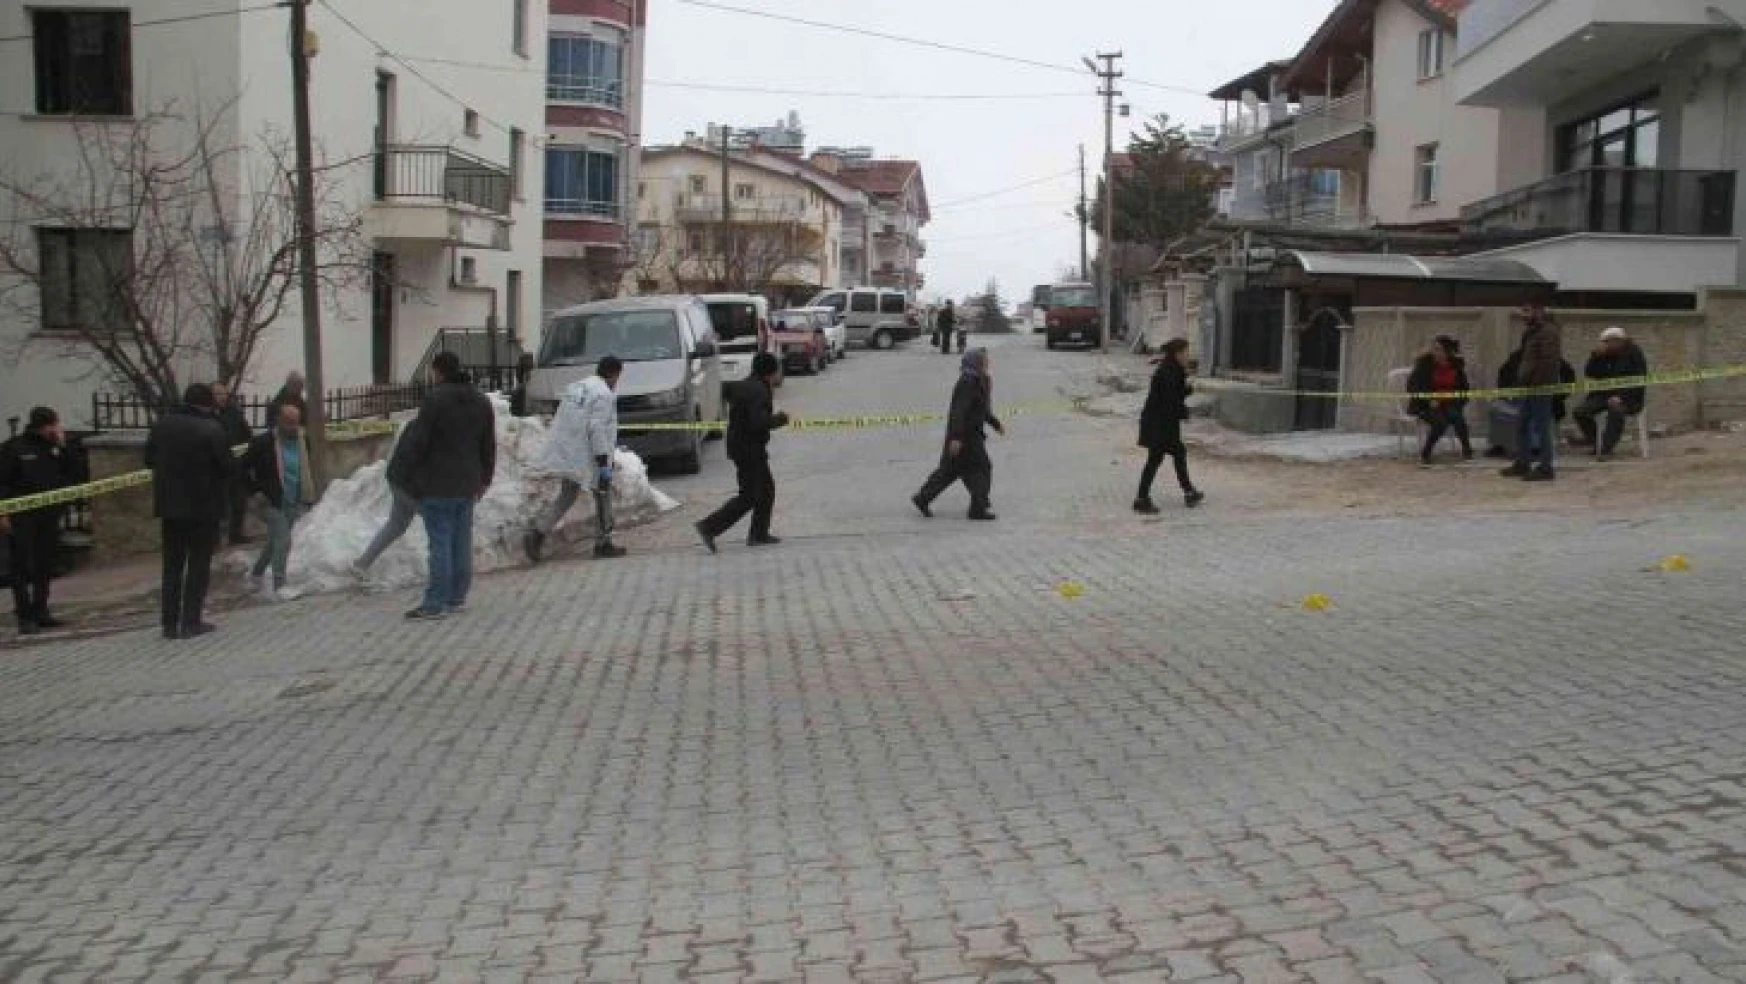 Konya'da alacak verecek kavgasında 1 kişi öldürüldü